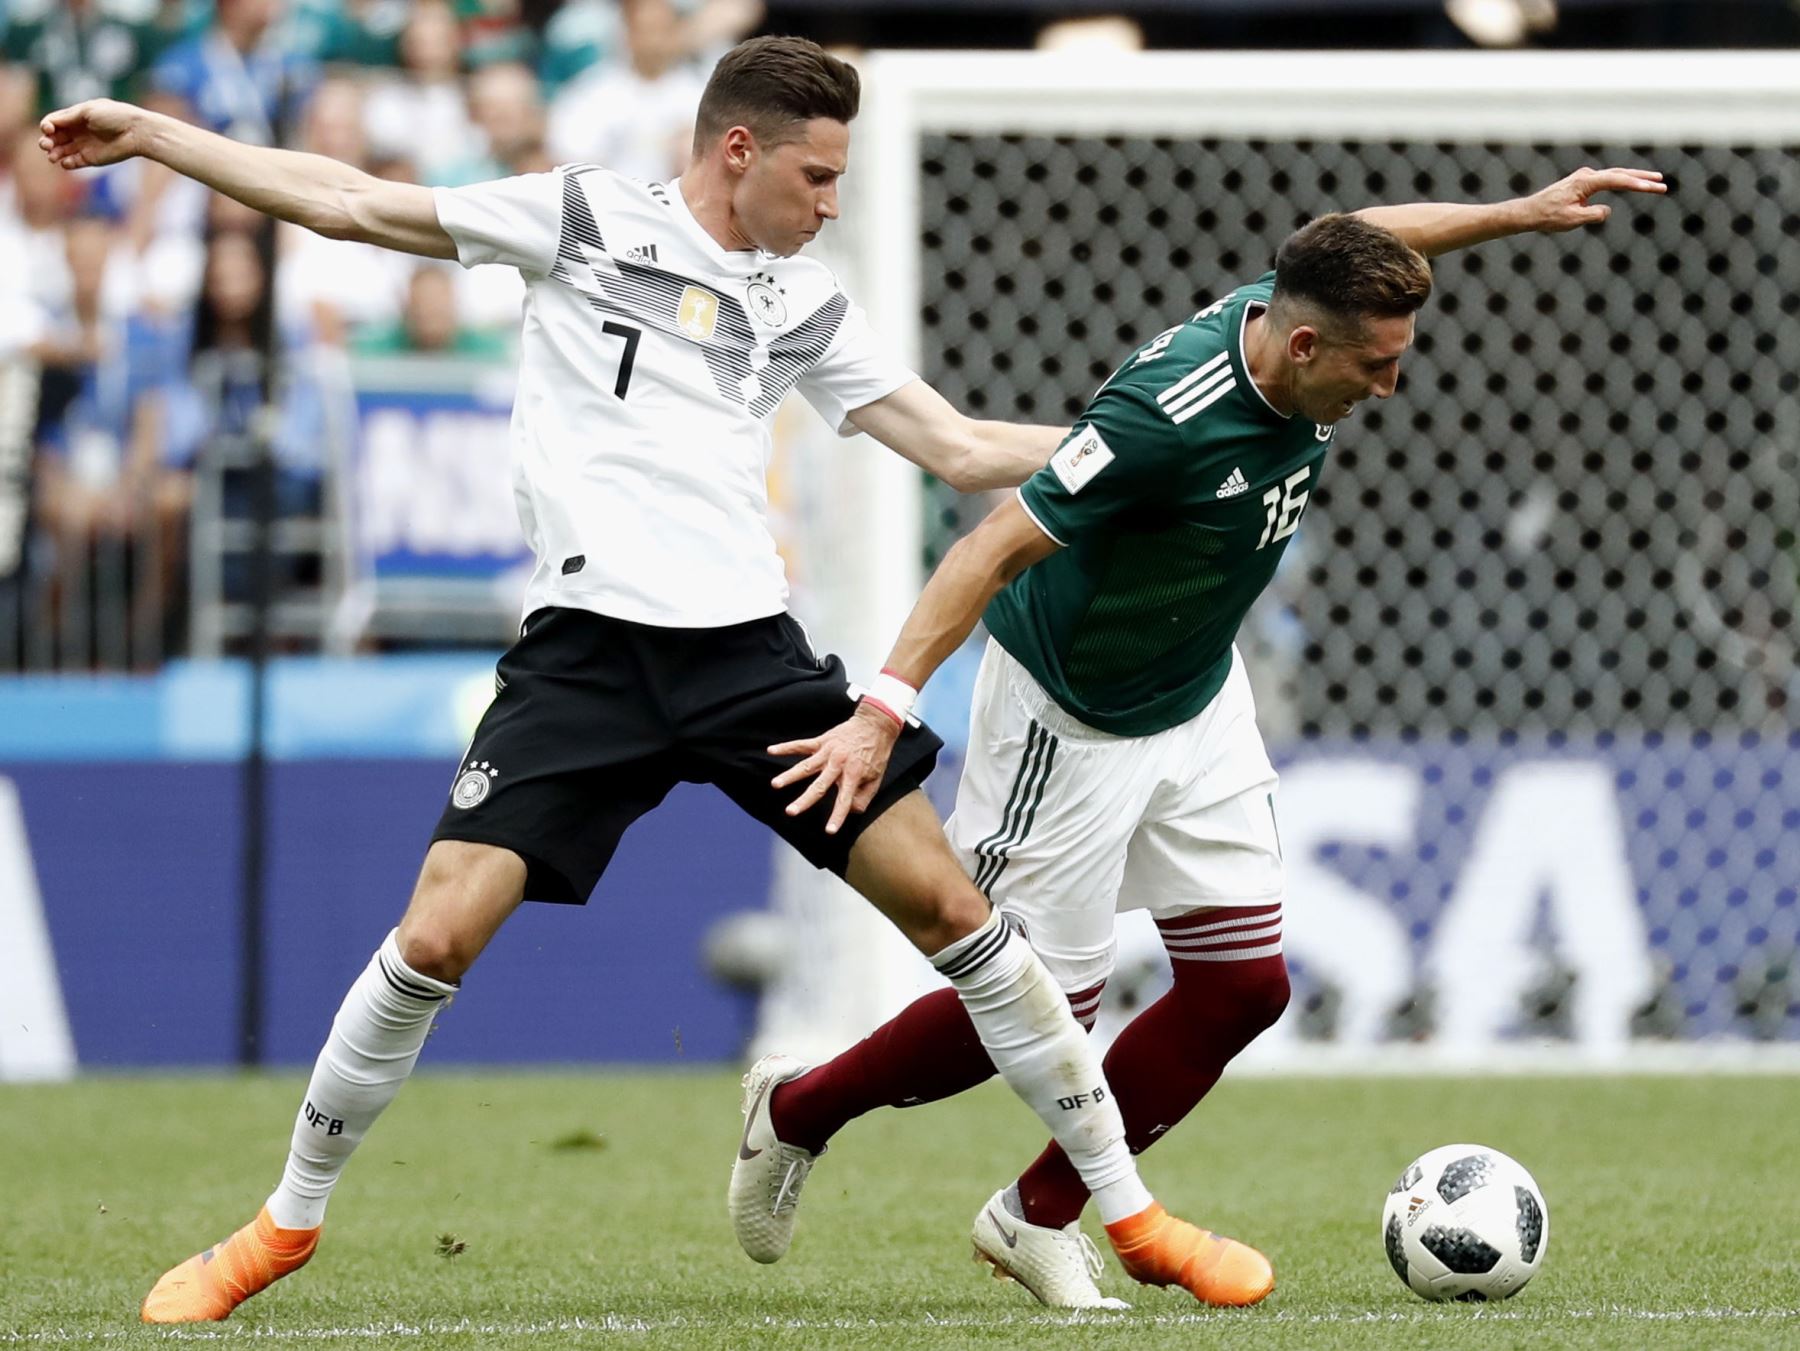 Julian Draxler de Alemania y Héctor Herrera de México en acción durante la Copa Mundial de la FIFA 2018 Grupo F partido de fútbol preliminar entre Alemania y México.Foto:EFE